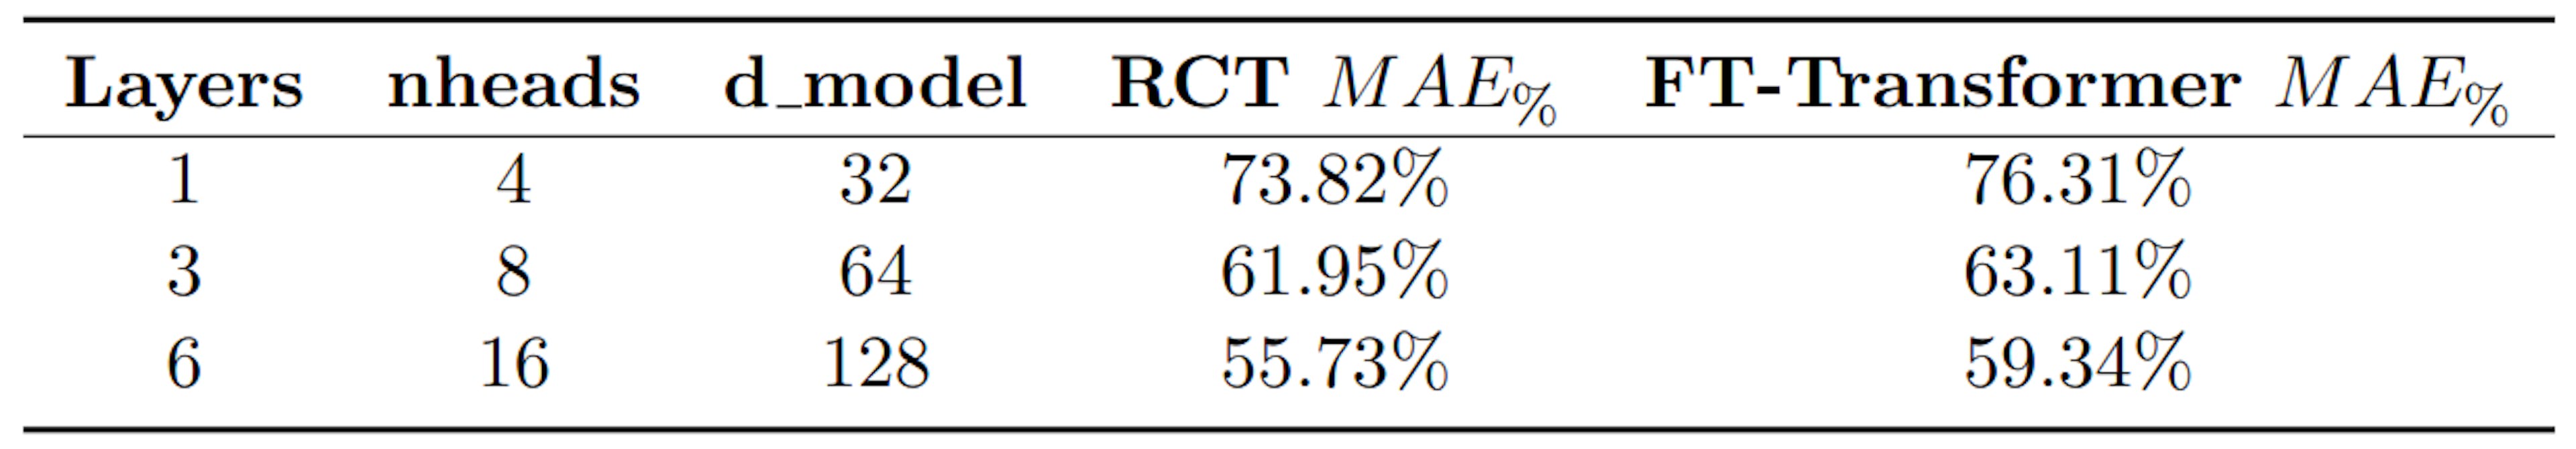 Tabla 2: Comparación de MAE% entre RCT y FT-Transformer (SOTA para modelos de autoatención)